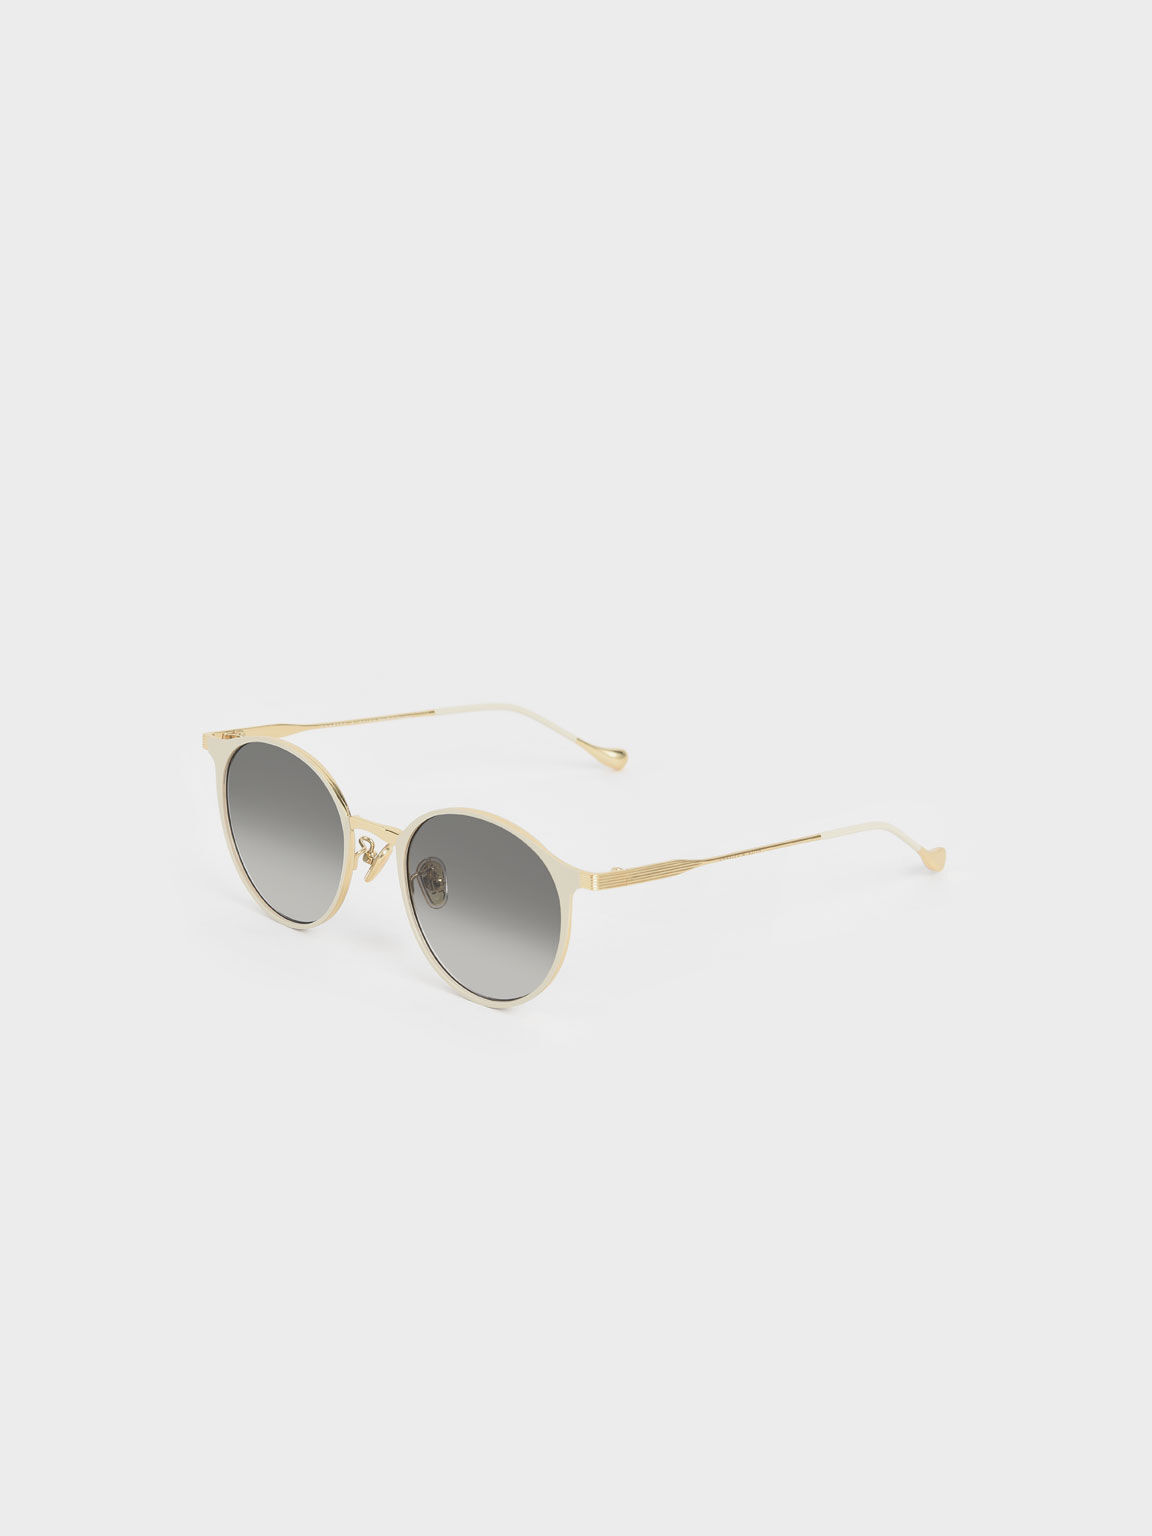 Tinted Round Sunglasses, Cream, hi-res